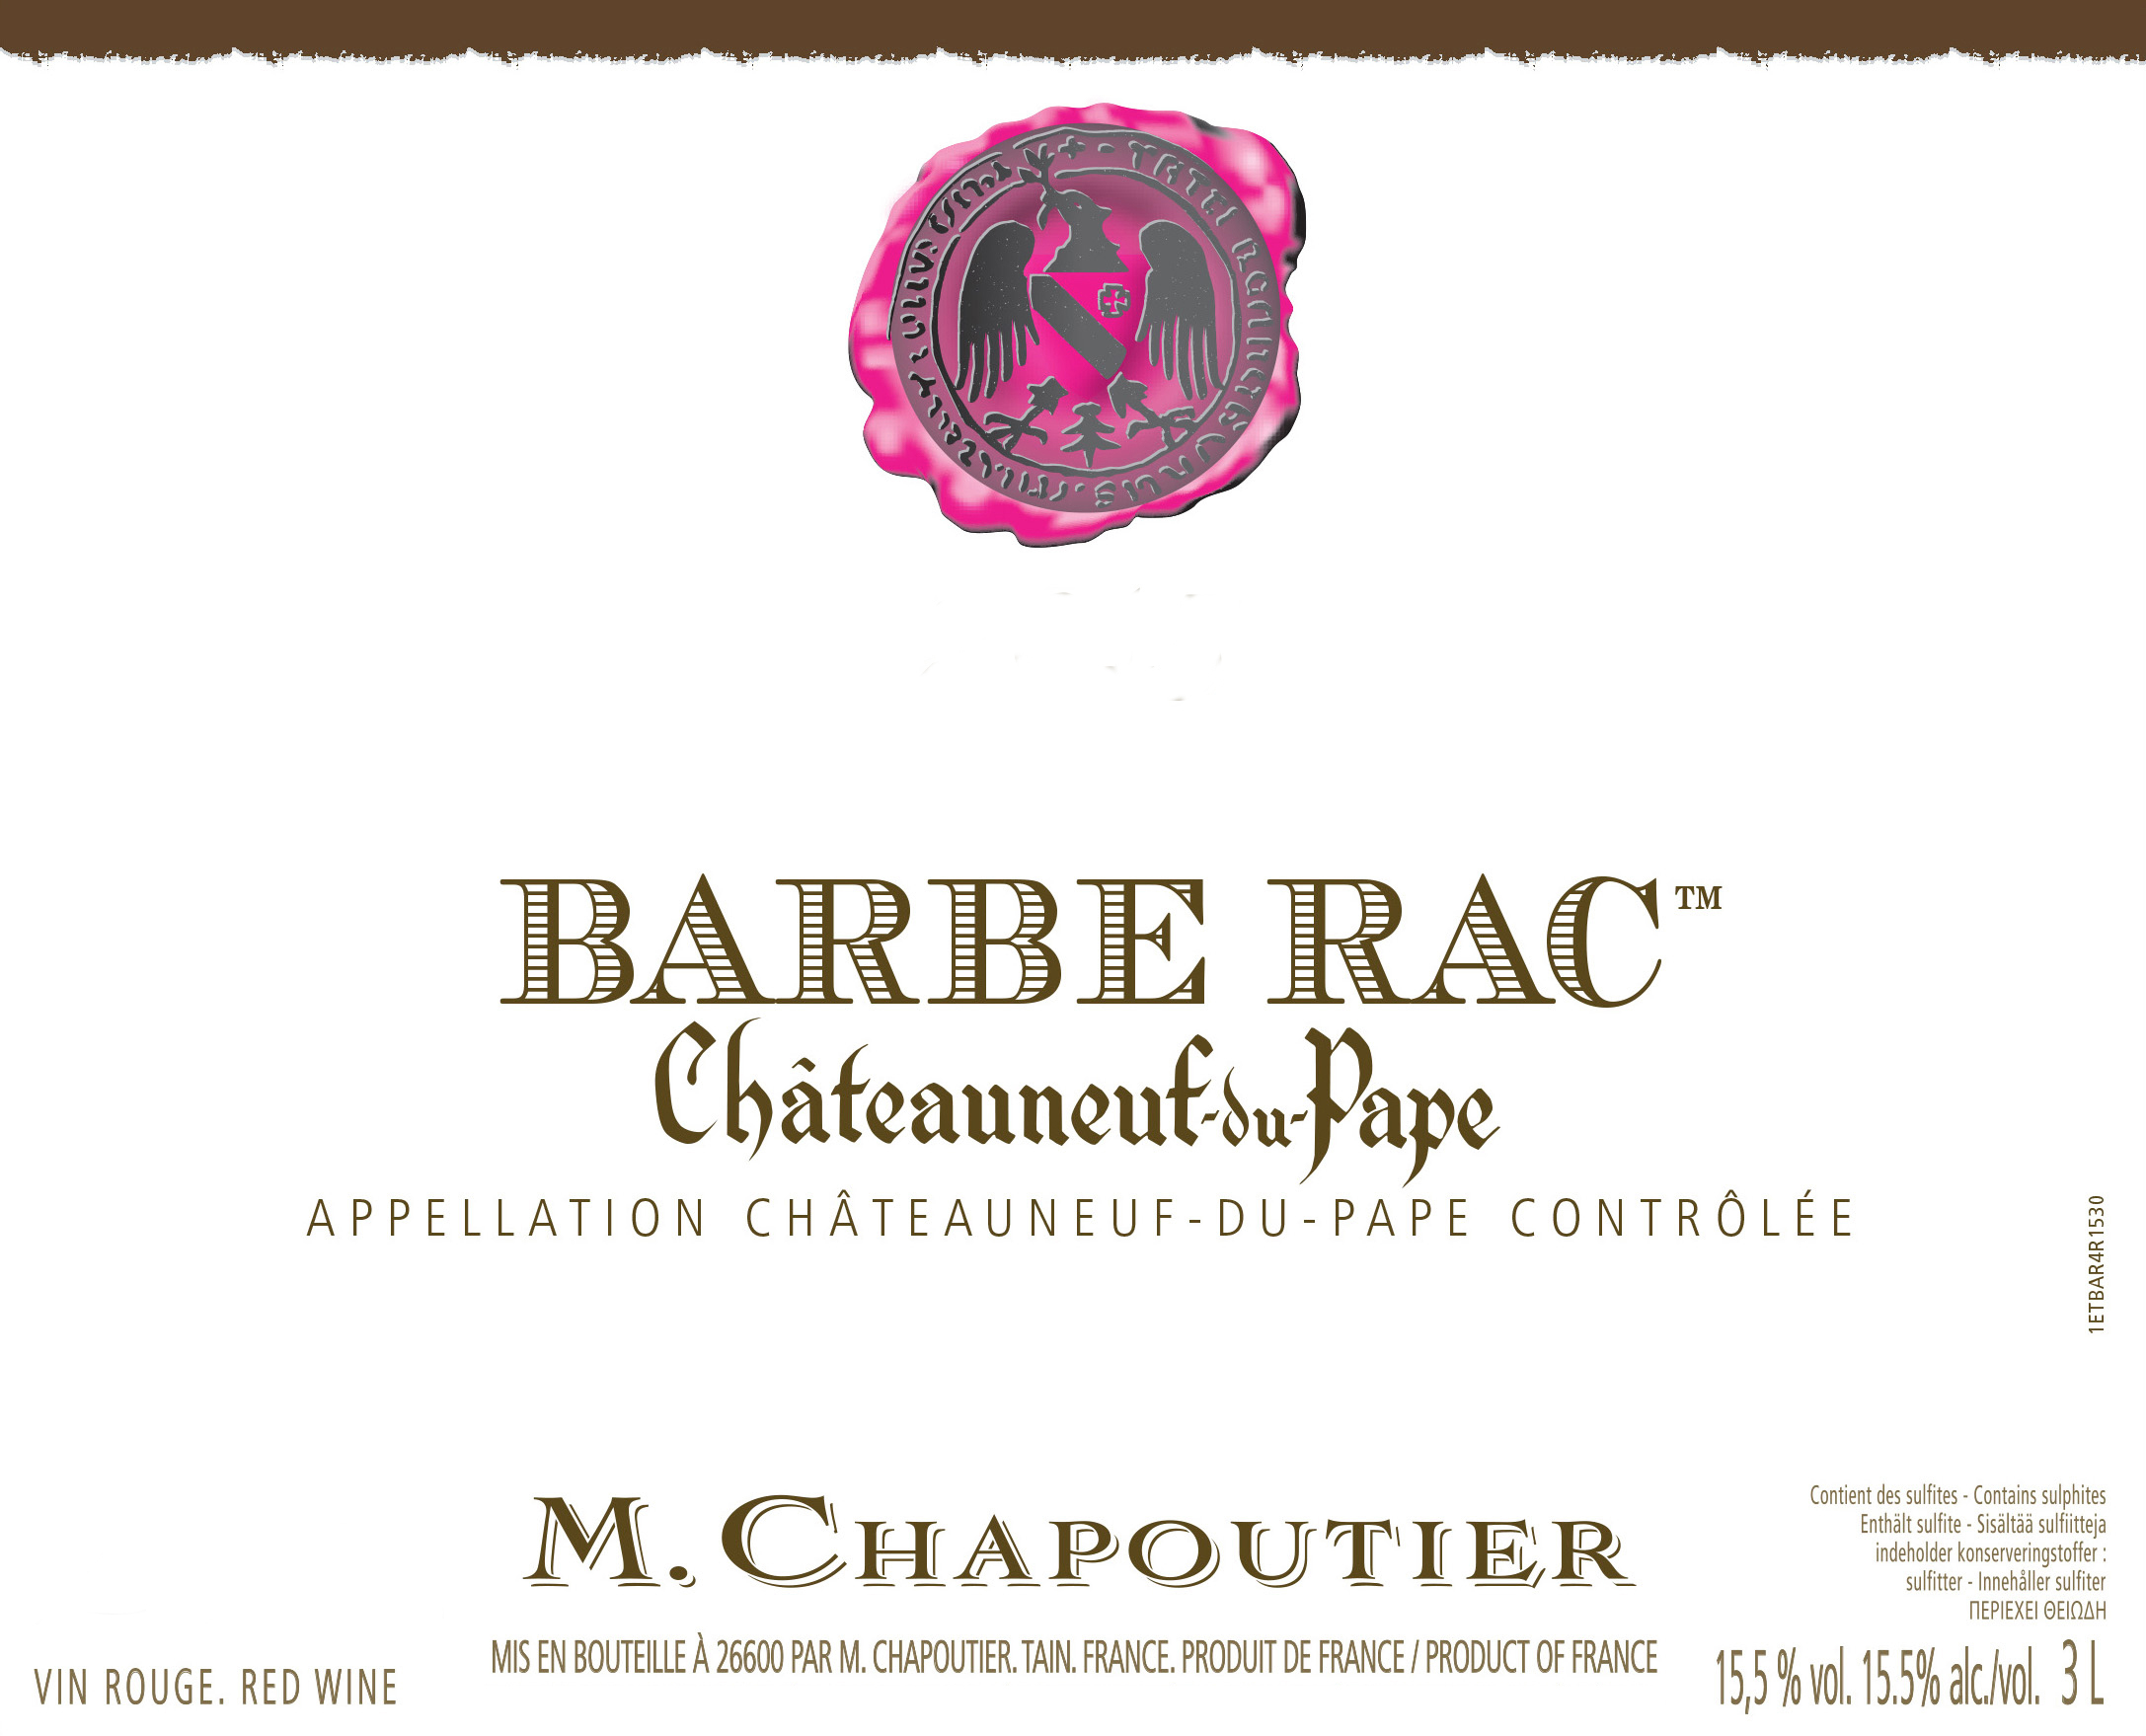 Chapoutier - Chateauneuf-du-Pape Barbe Rac label